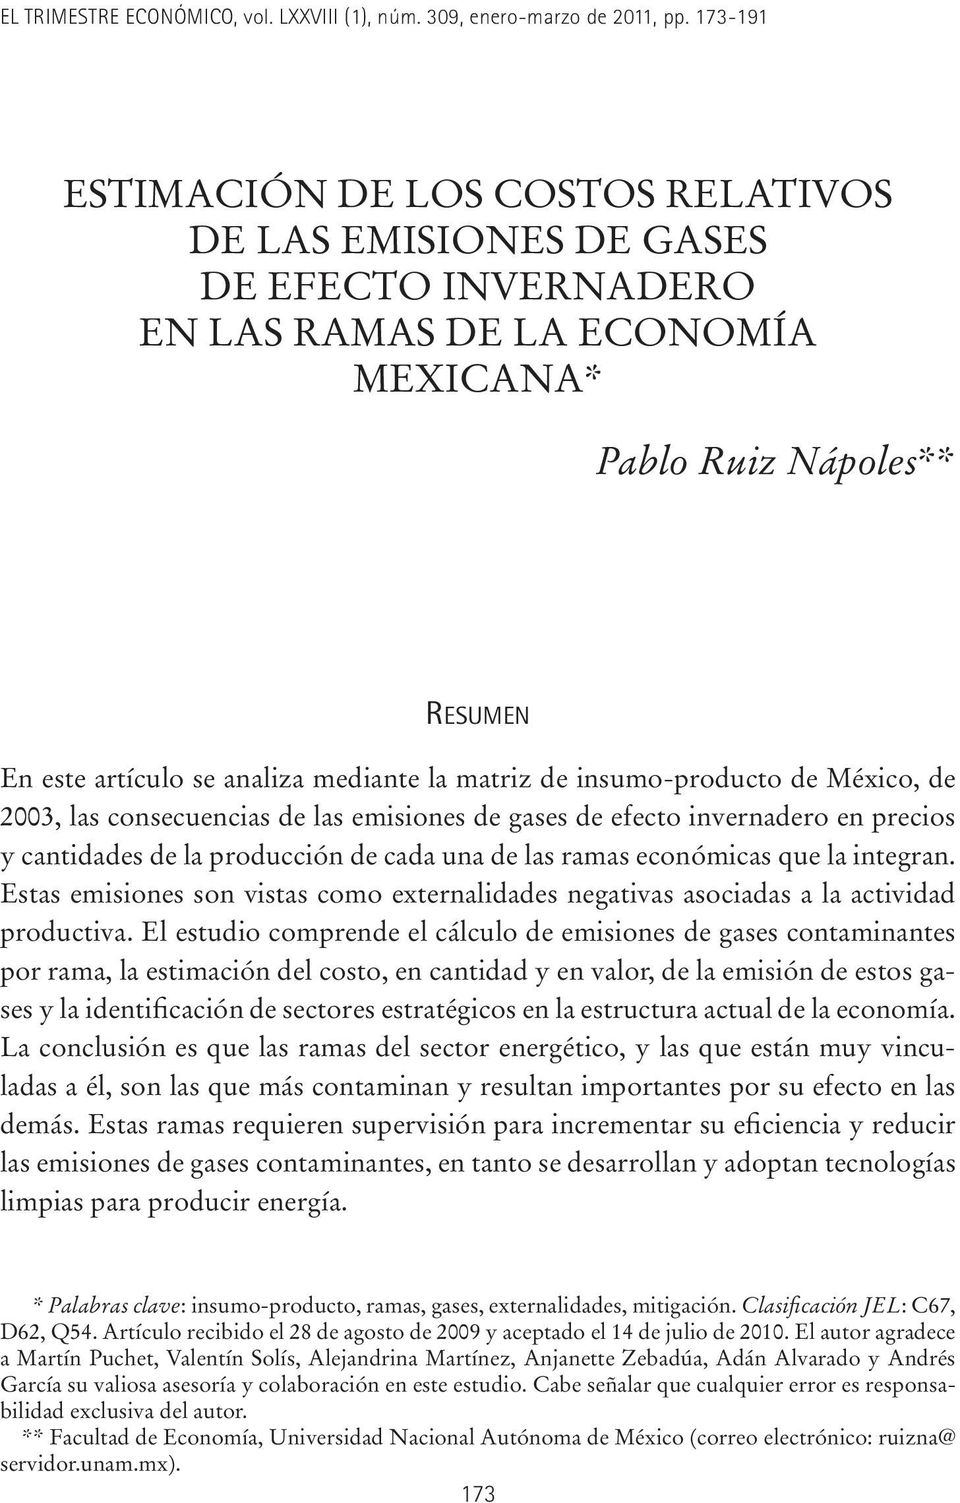 matriz de insumo-producto de México, de 2003, las consecuencias de las emisiones de gases de efecto invernadero en precios y cantidades de la producción de cada una de las ramas económicas que la